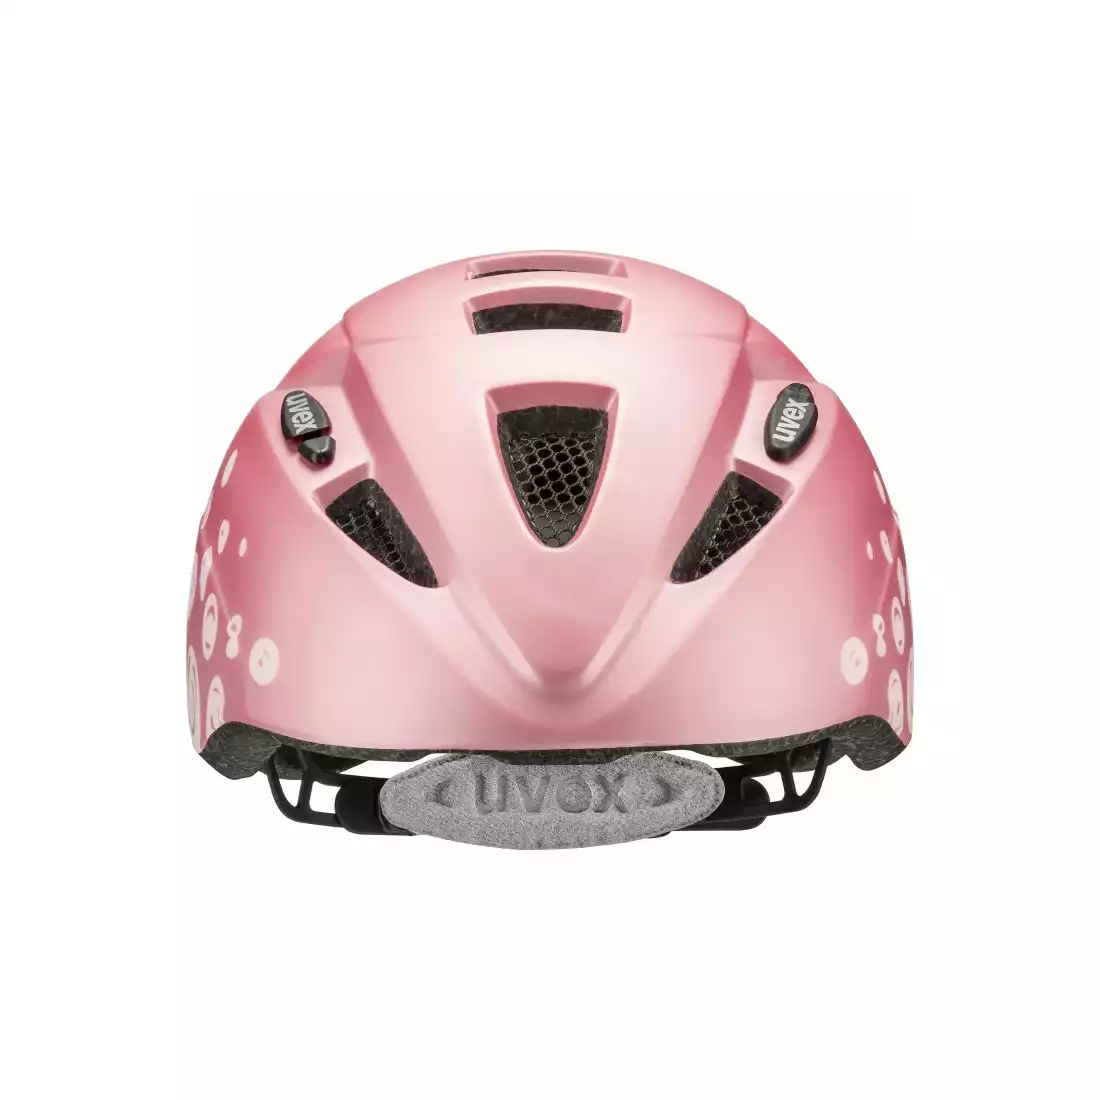  UVEX Kid 2 cc casca de bicicleta pink polka dots